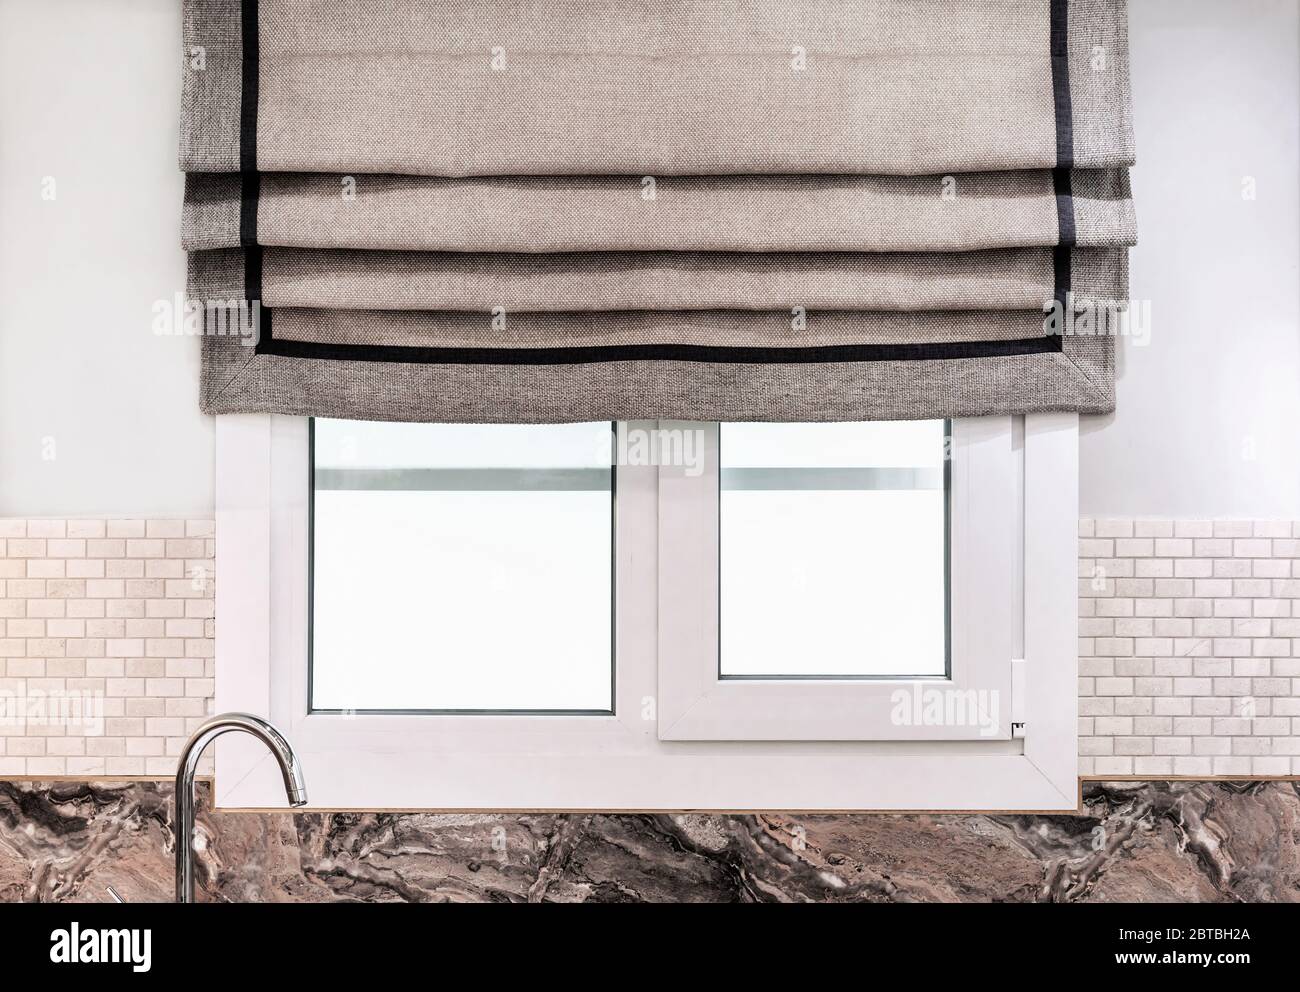 Leinen römische Vorhänge oder Stoff Jalousien am Küchenfenster  Stockfotografie - Alamy